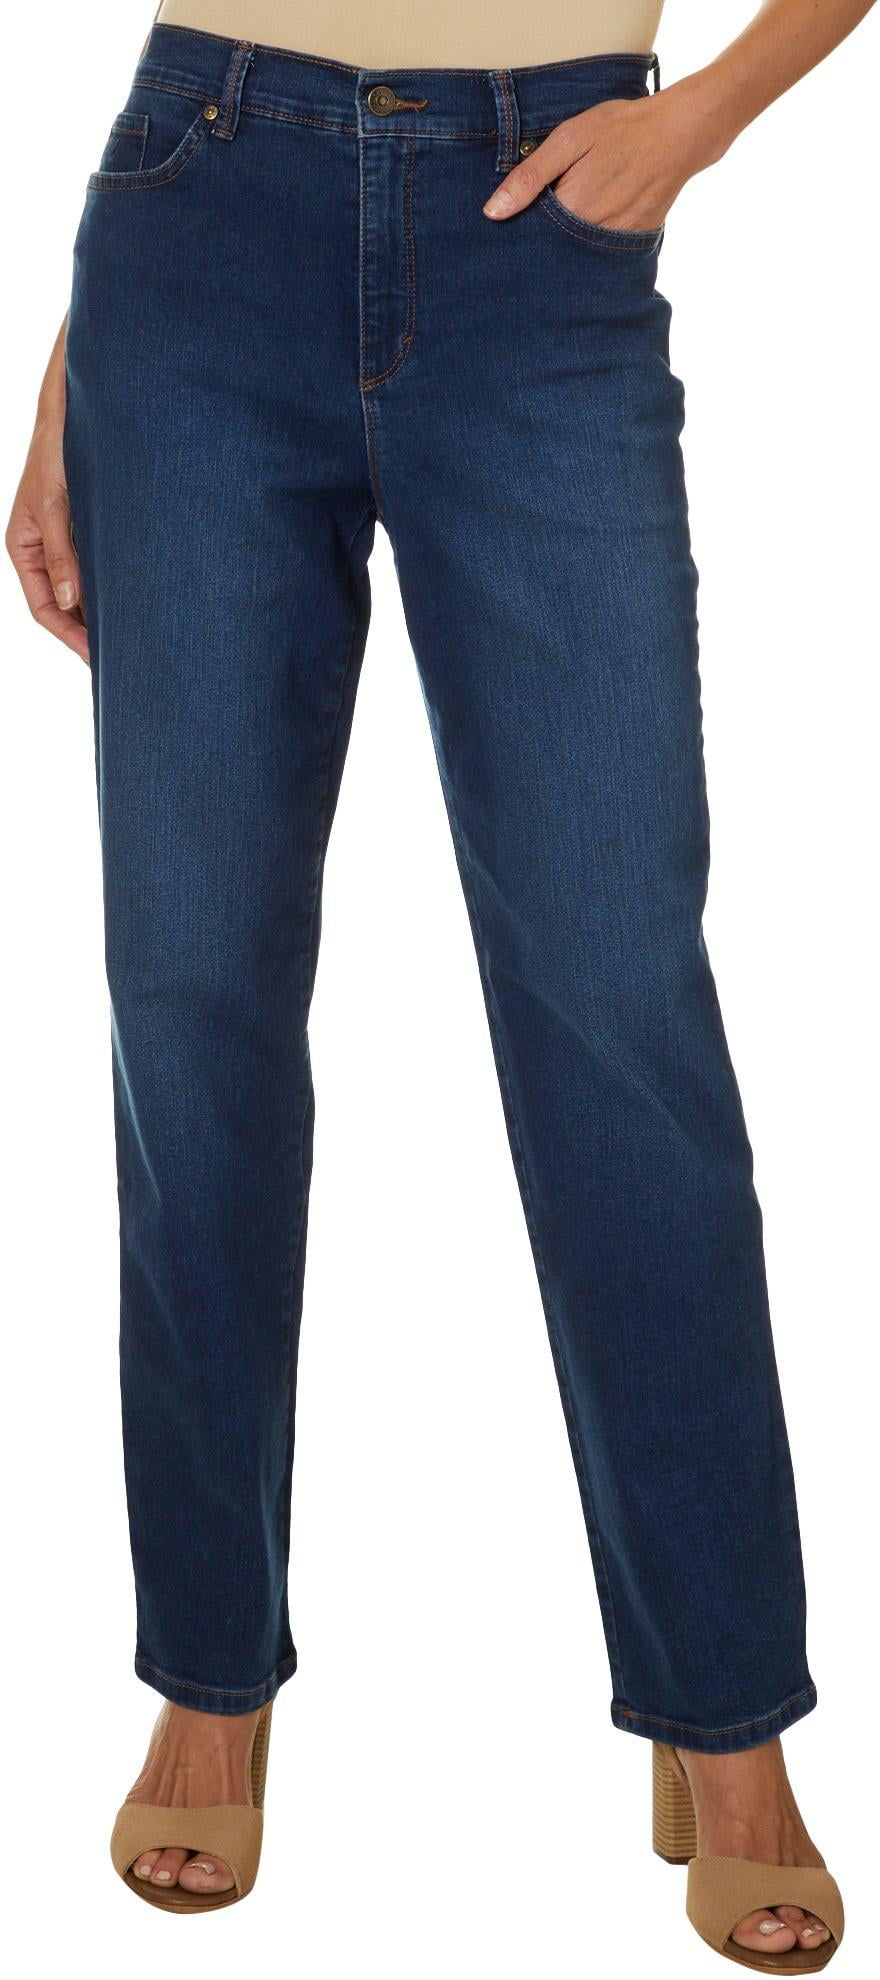 gloria vanderbilt jeans with embellished pockets